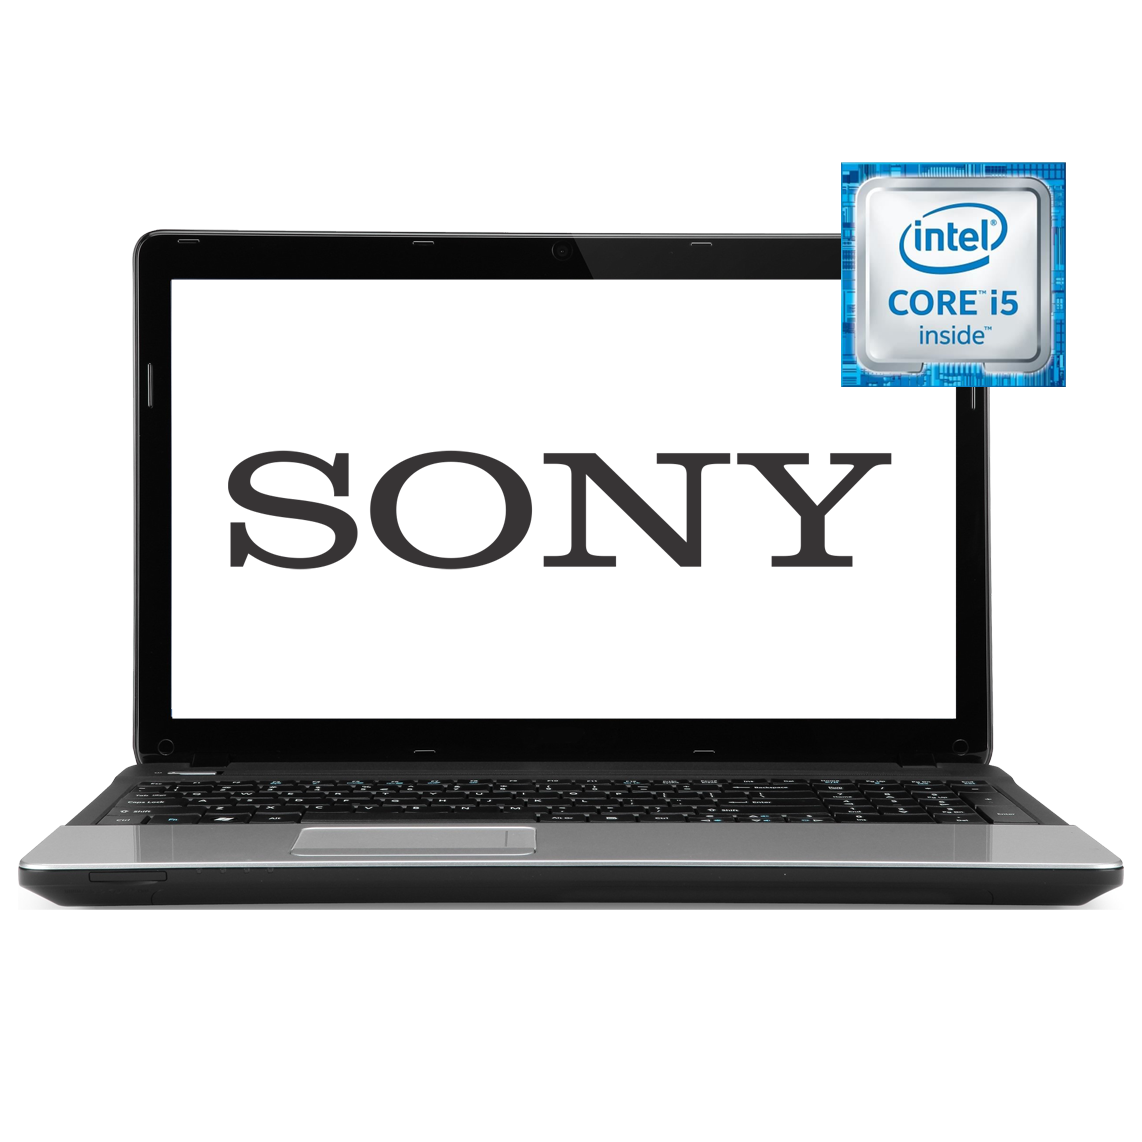 Sony - 15.6 inch Core i5 3rd Gen